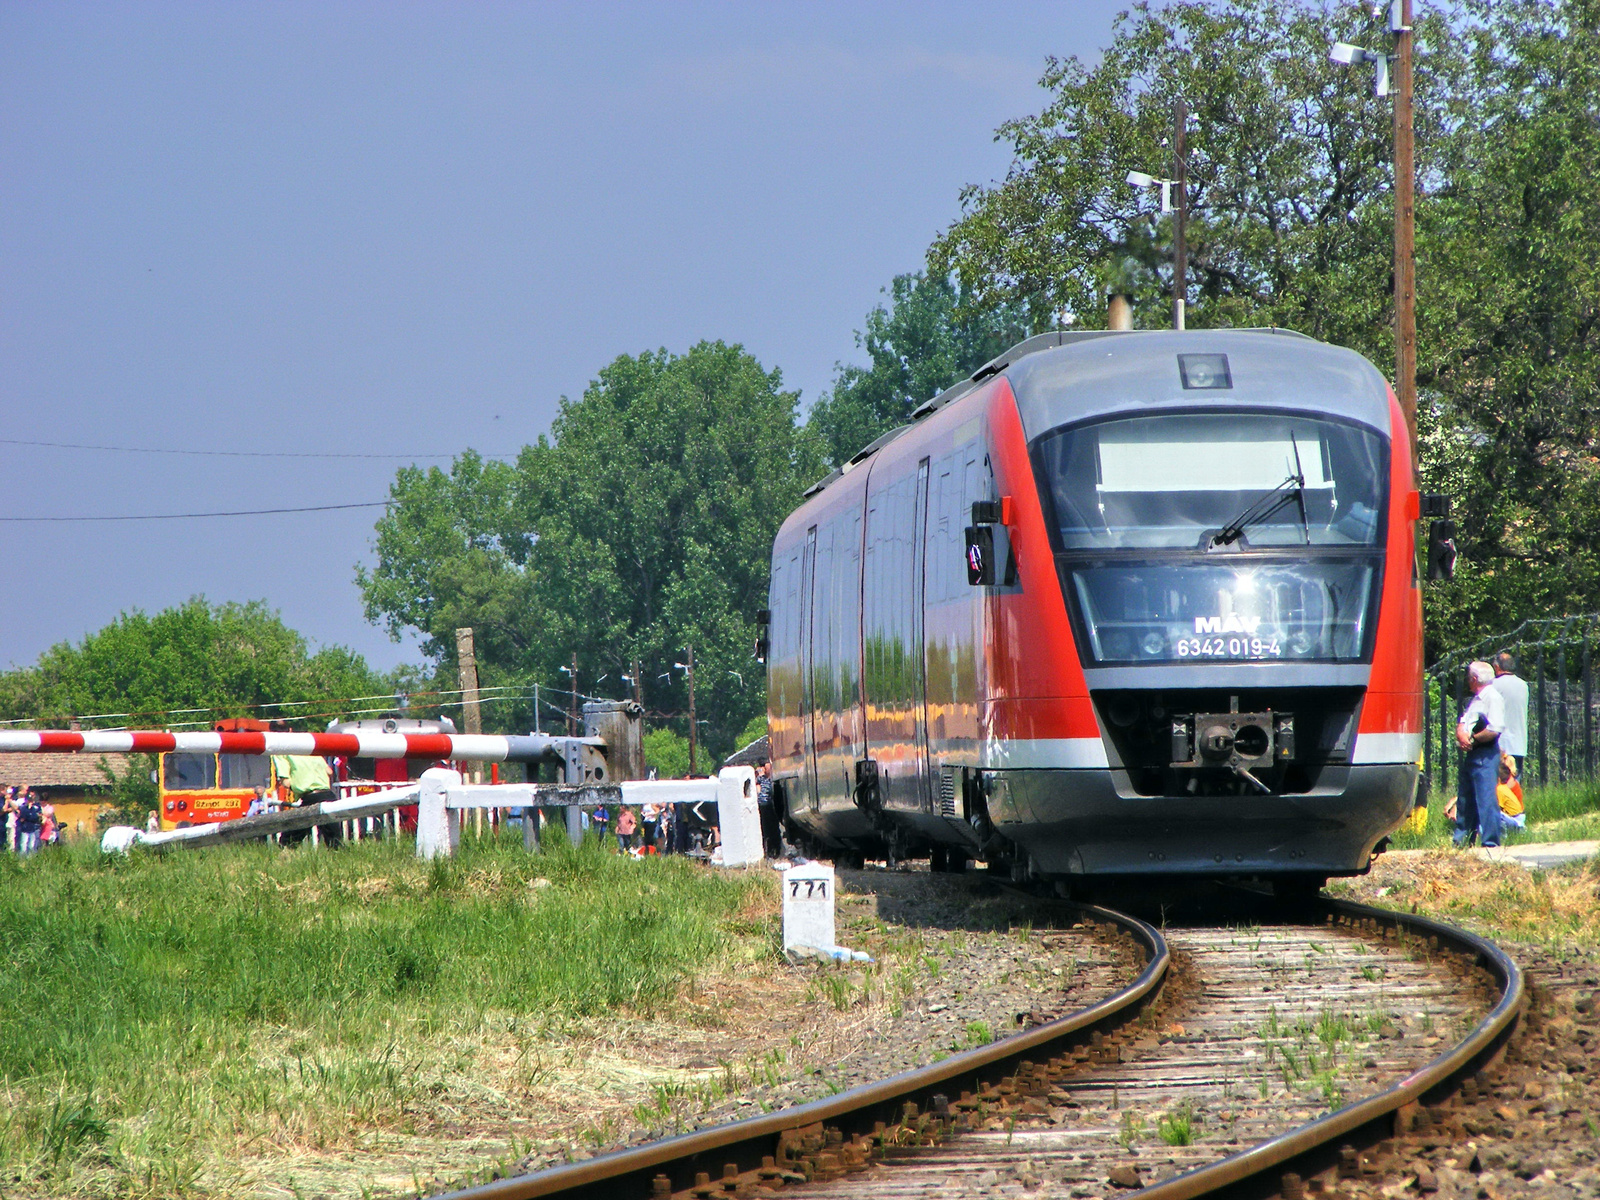 6342 019, Szécsény, 2009.05.01